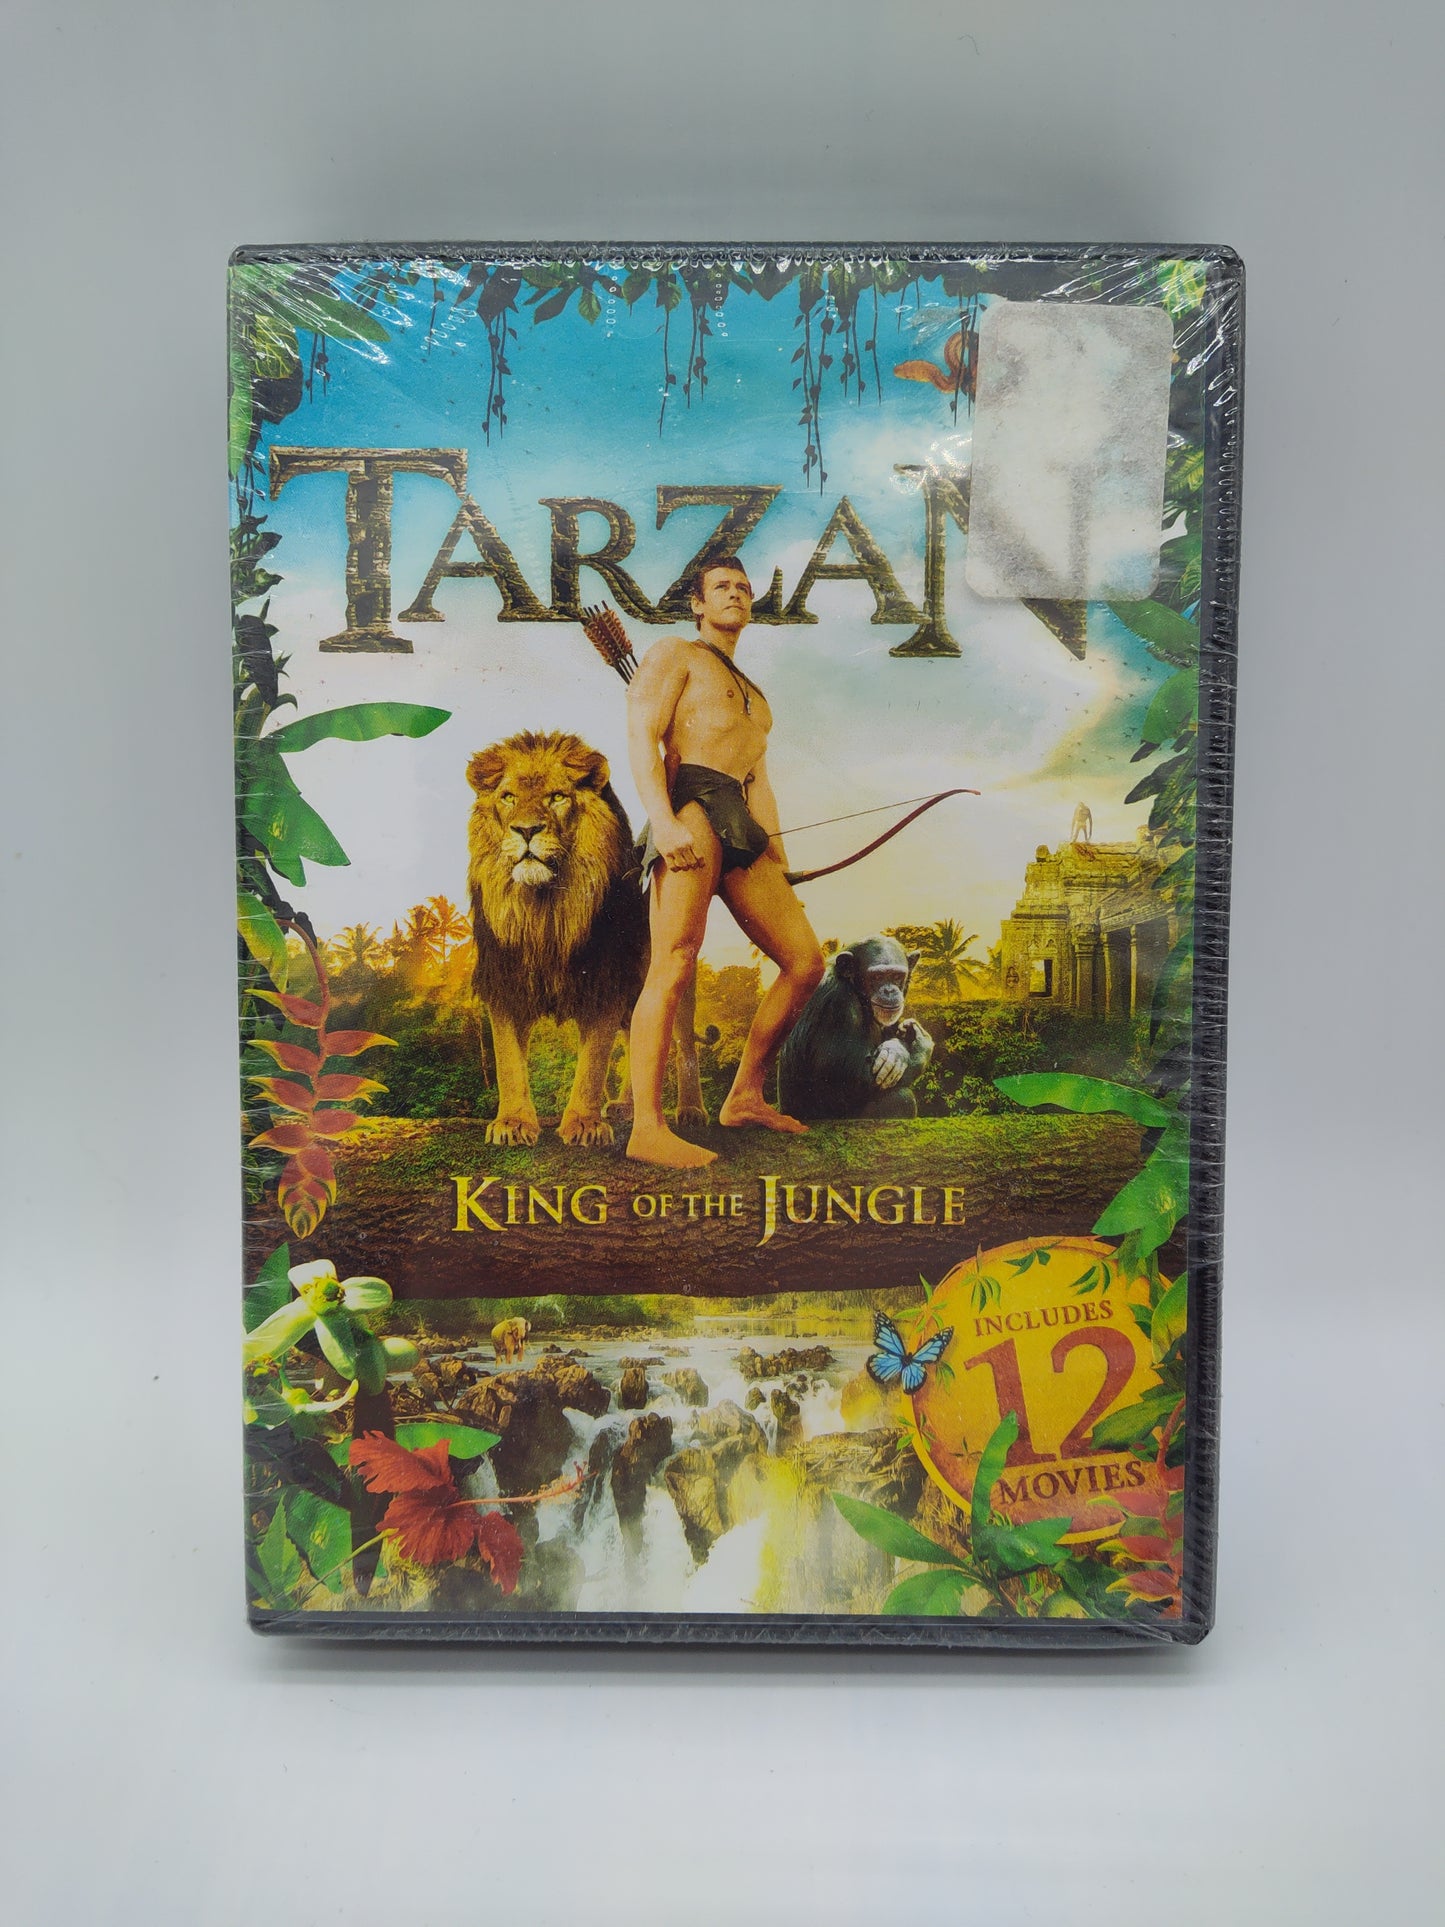 Tarzan King of the Jungle 2 DVDs 12 Movies NIP